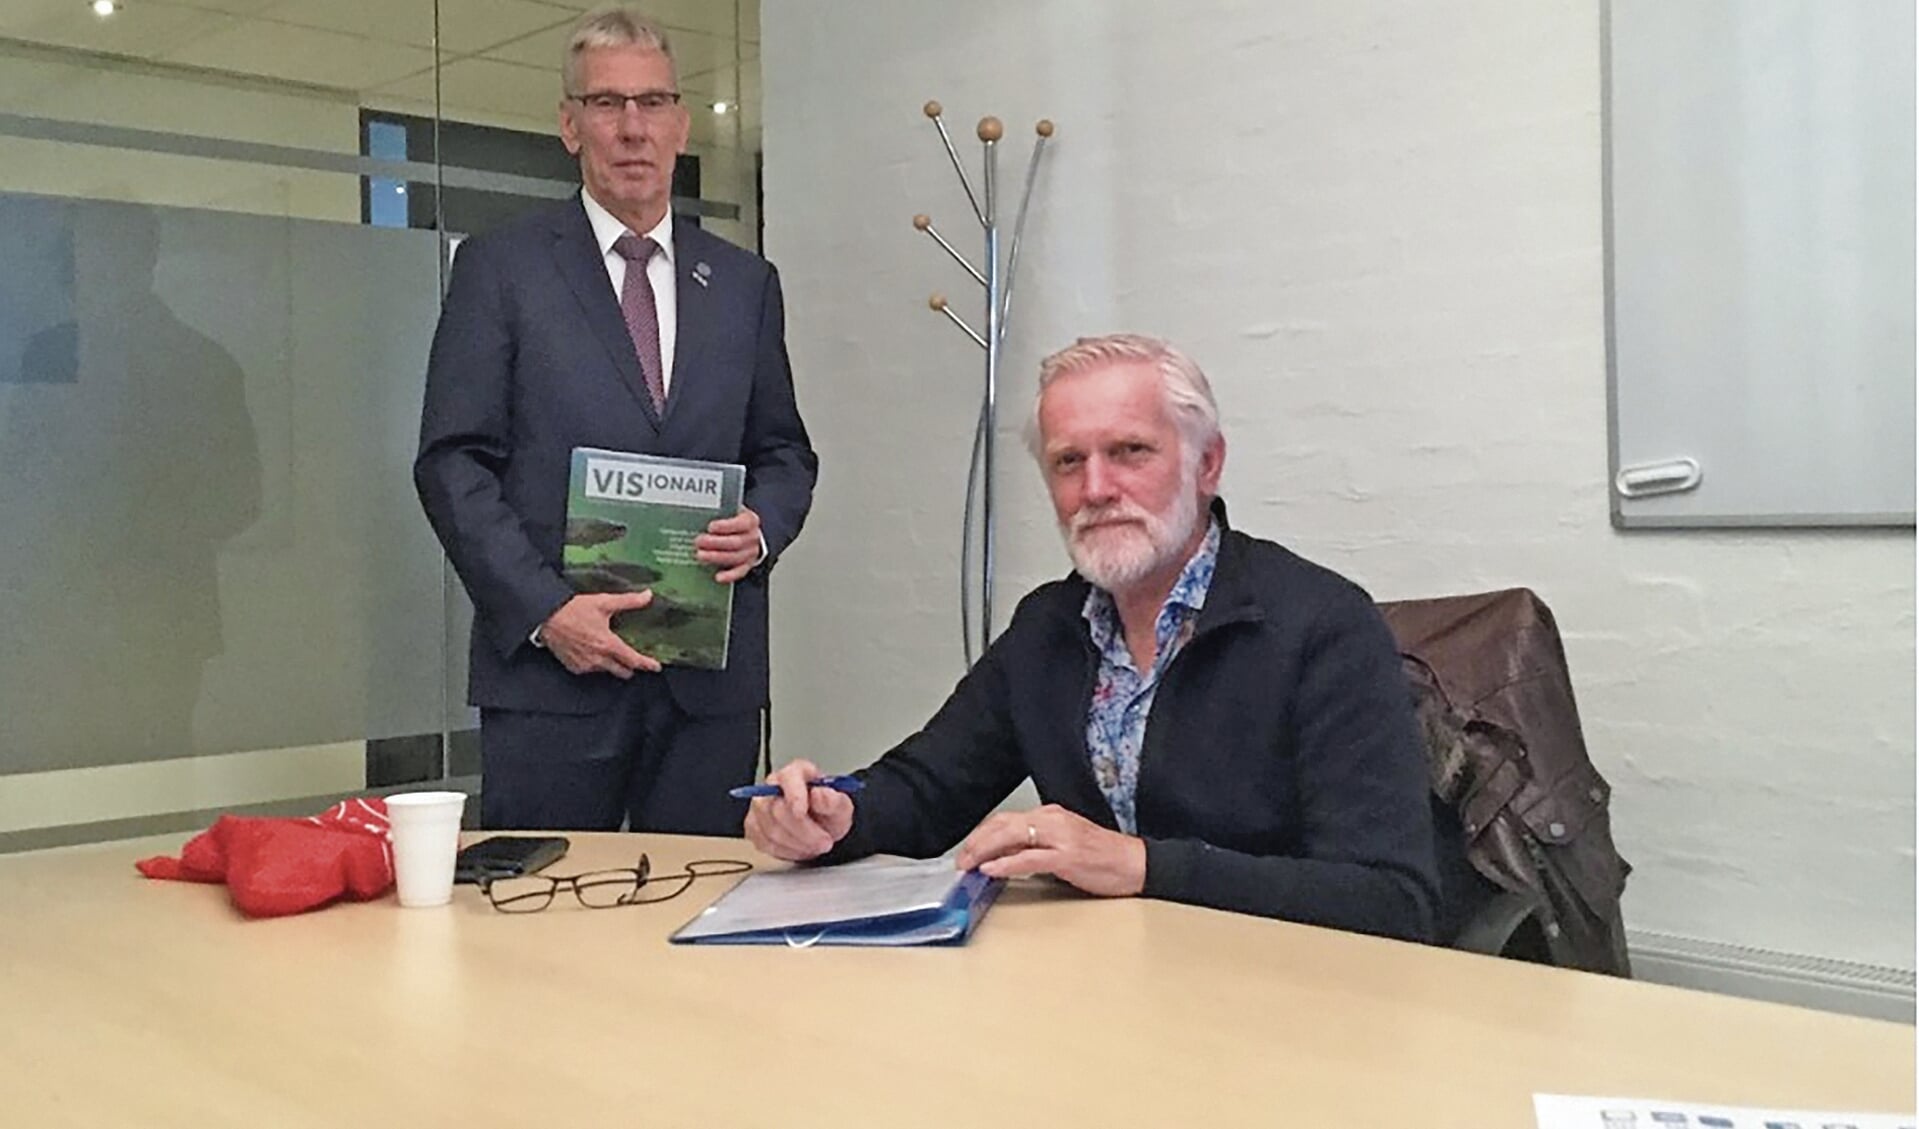 Ondertekening visrechten door wethouder H. van Wiggen en de voorzitter van HSV Montfoort de heer P. Schouten.